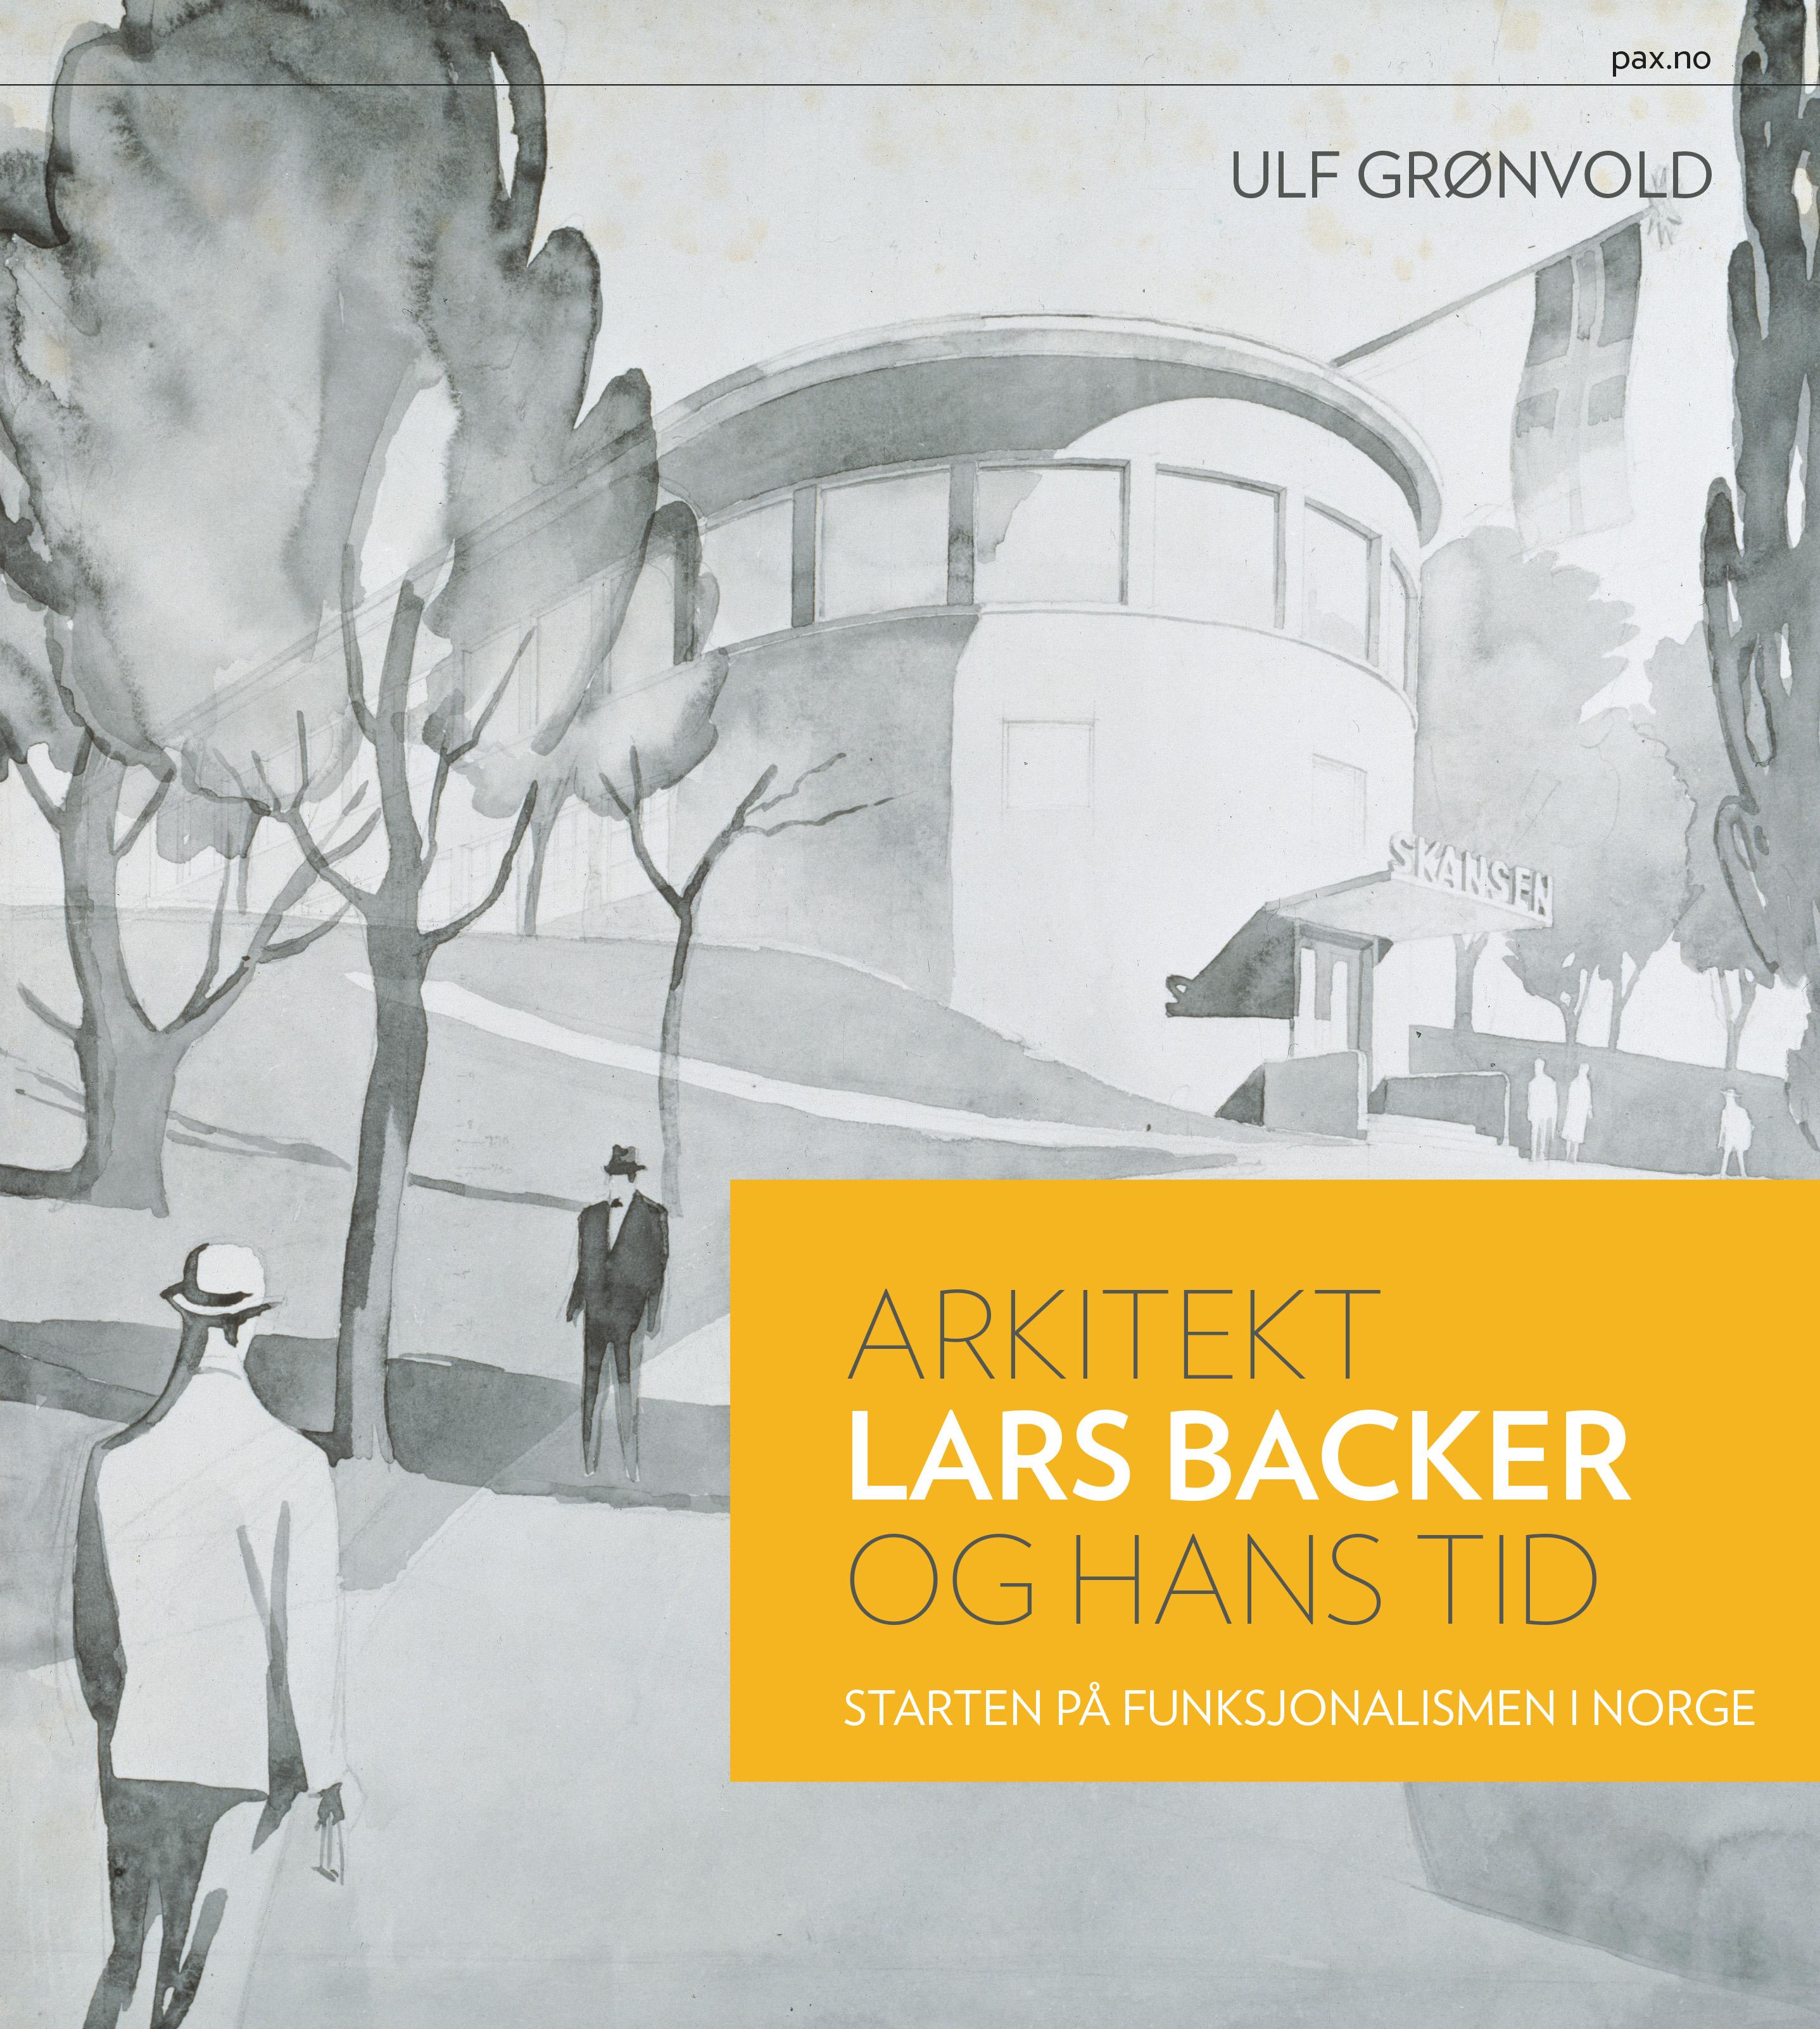 Arkitekt Lars Backer og hans tid